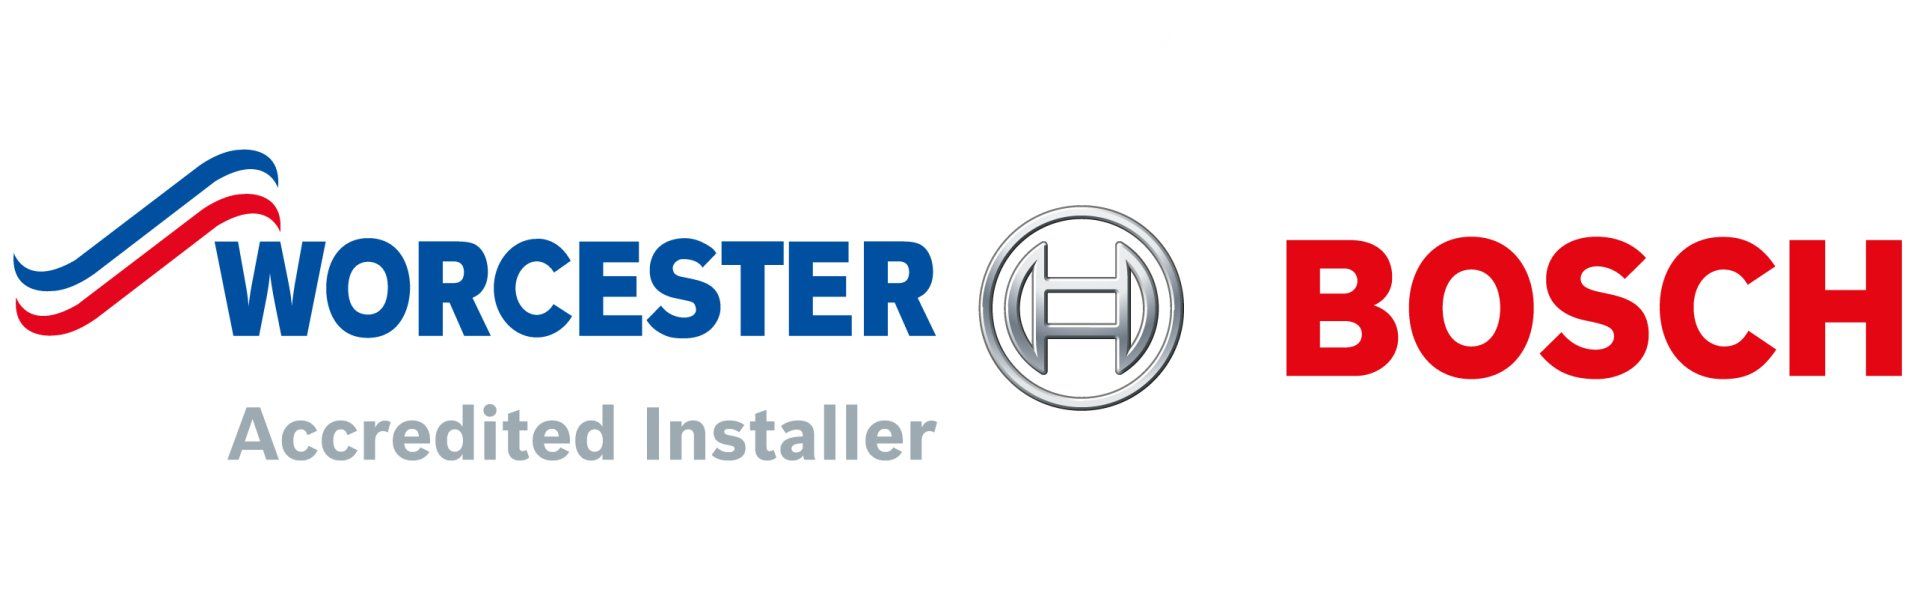 Worcester accredited installer, Bosch